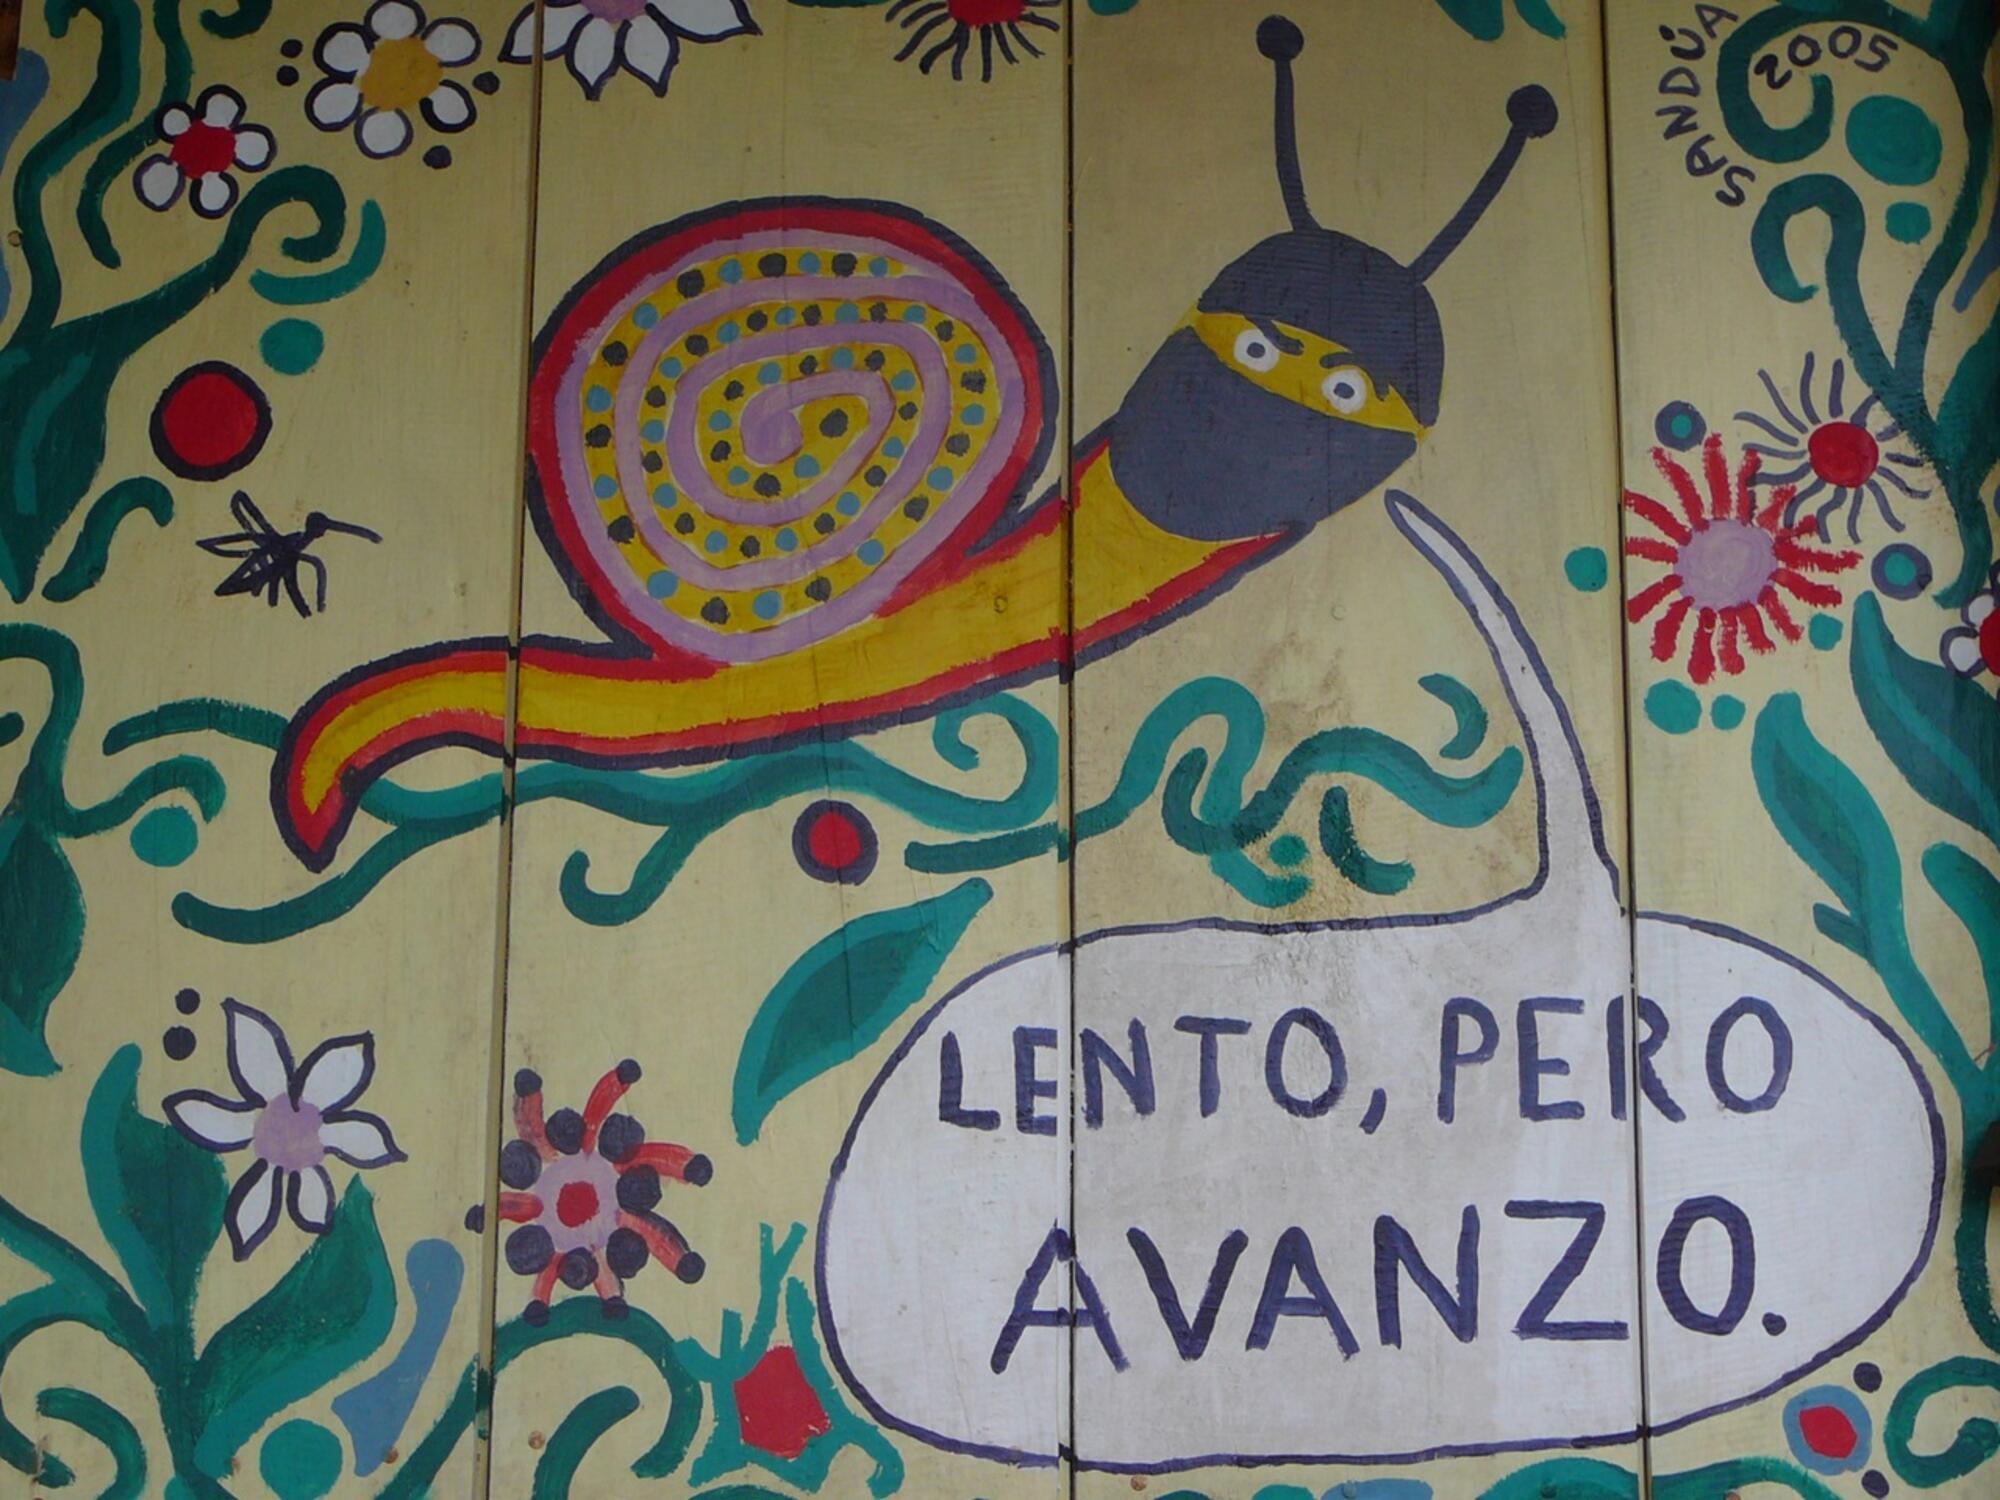 Caracol EZLN Lento pero avanzo